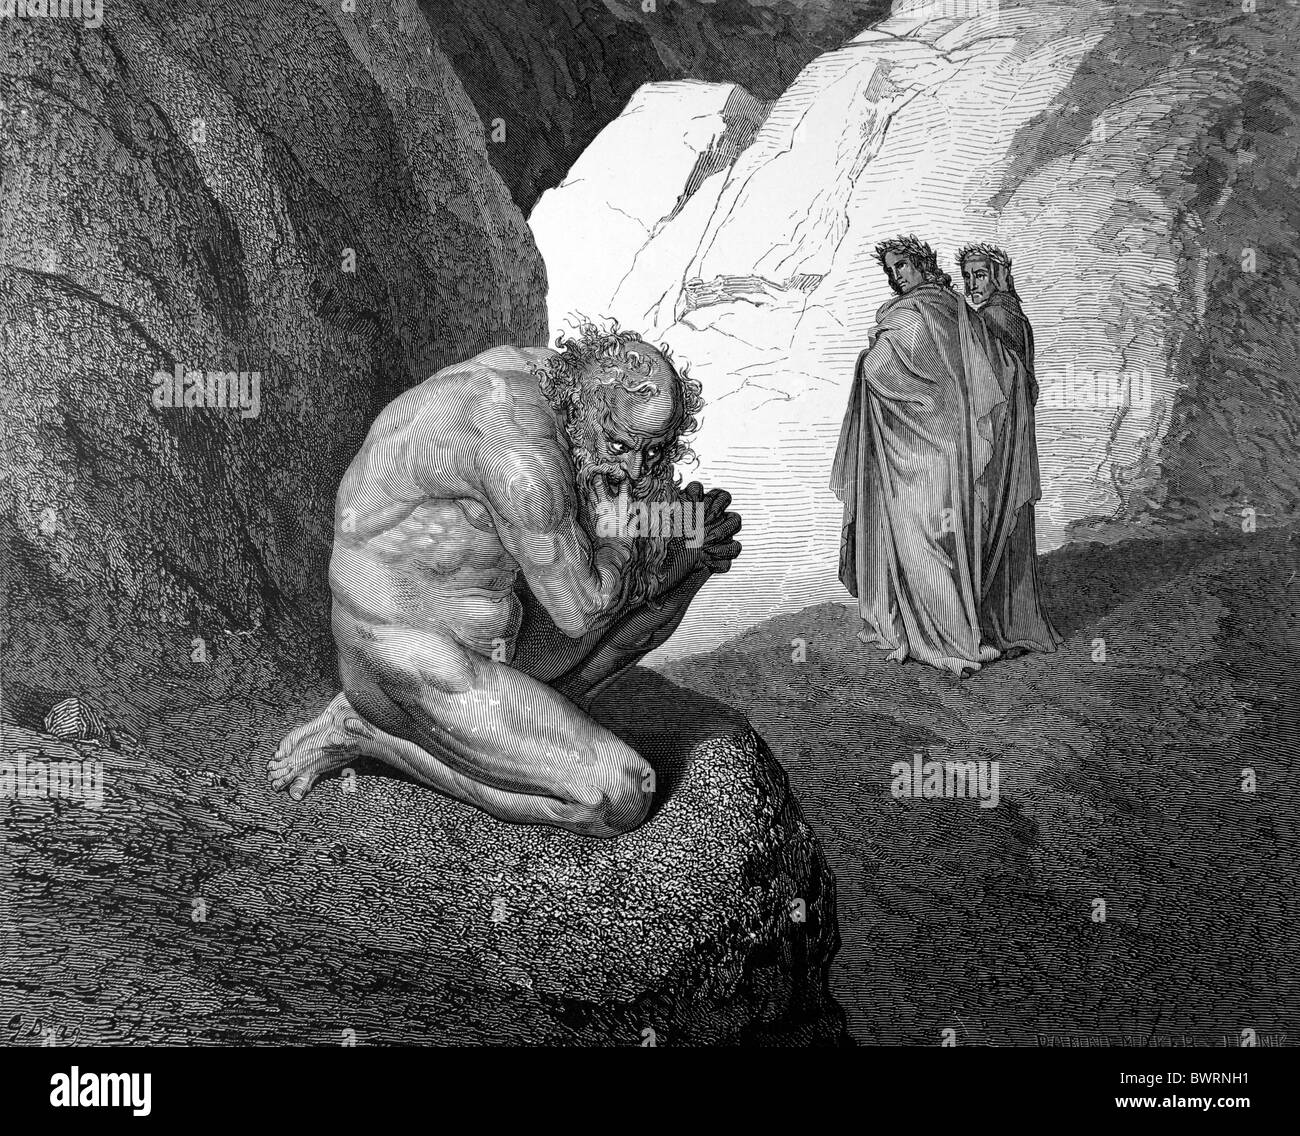 Gustave Doré ; Dante et Virgile rencontrez Plutus, gardien du quatrième cercle de l'enfer de la Divine Comédie de Dante Alighieri Banque D'Images